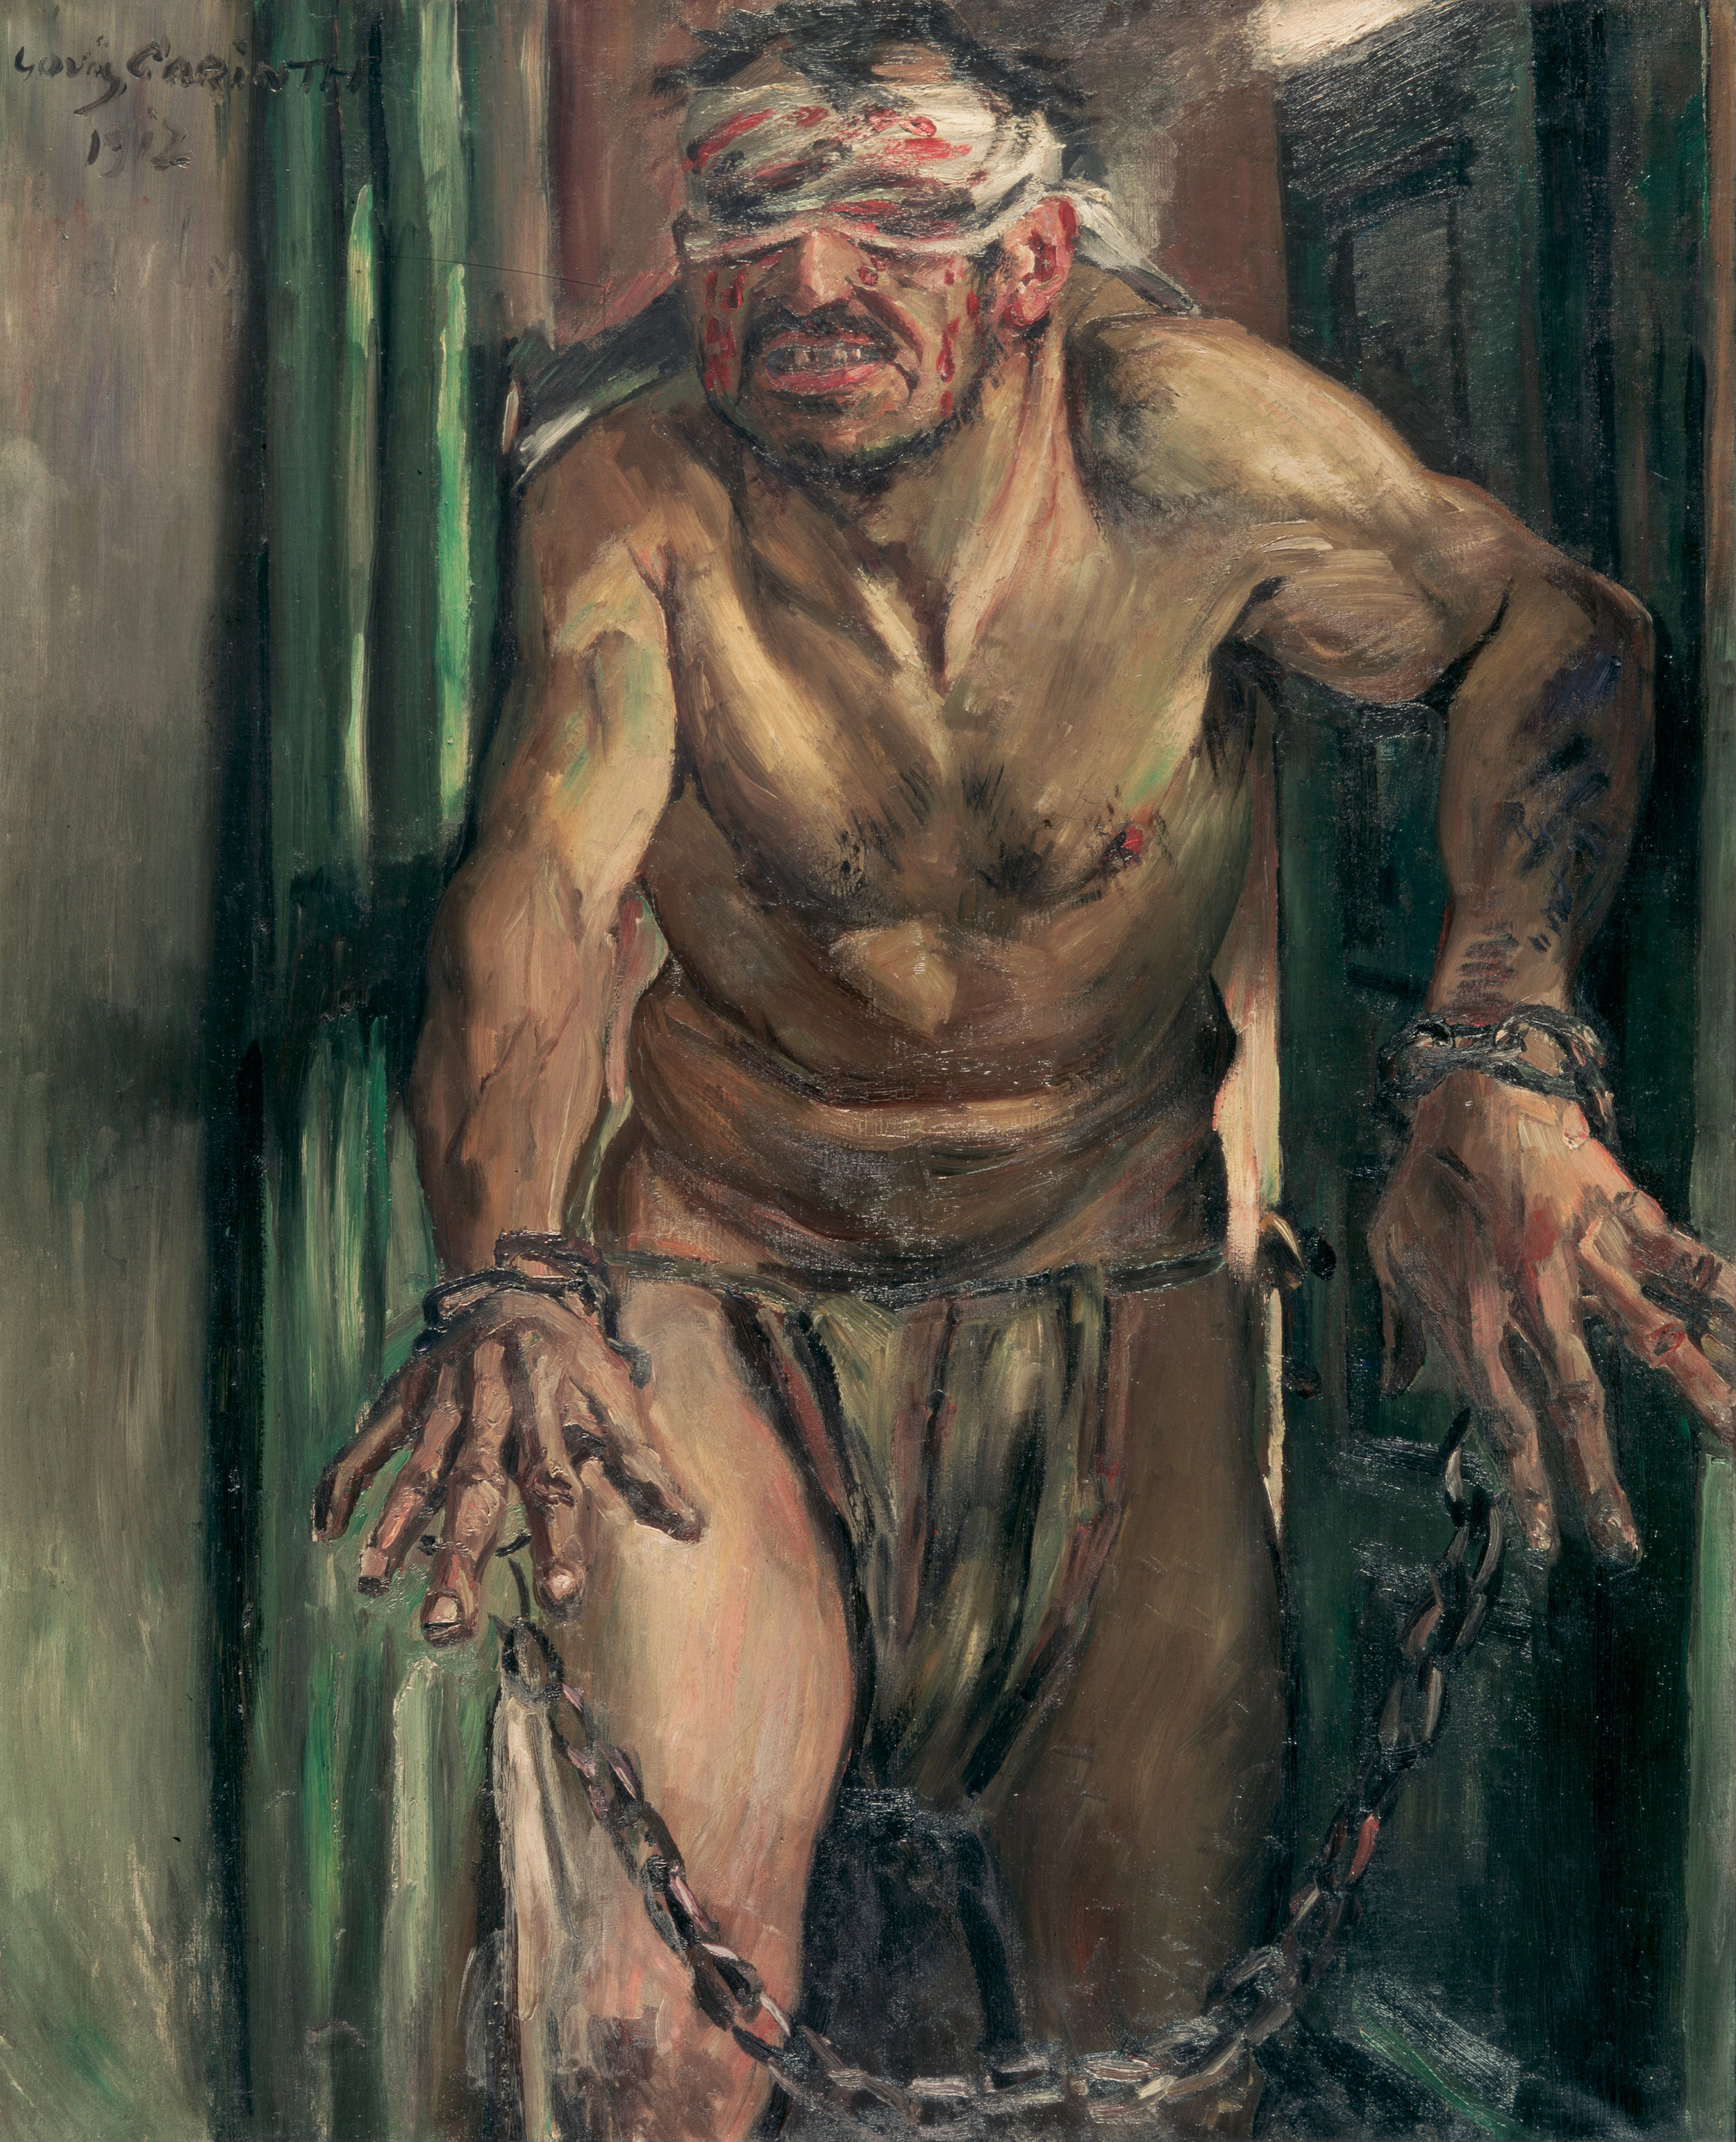 눈먼 삼손(The Blinded Samson) by Lovis Corinth - 1912 - 105.0 x 130.0 cm 